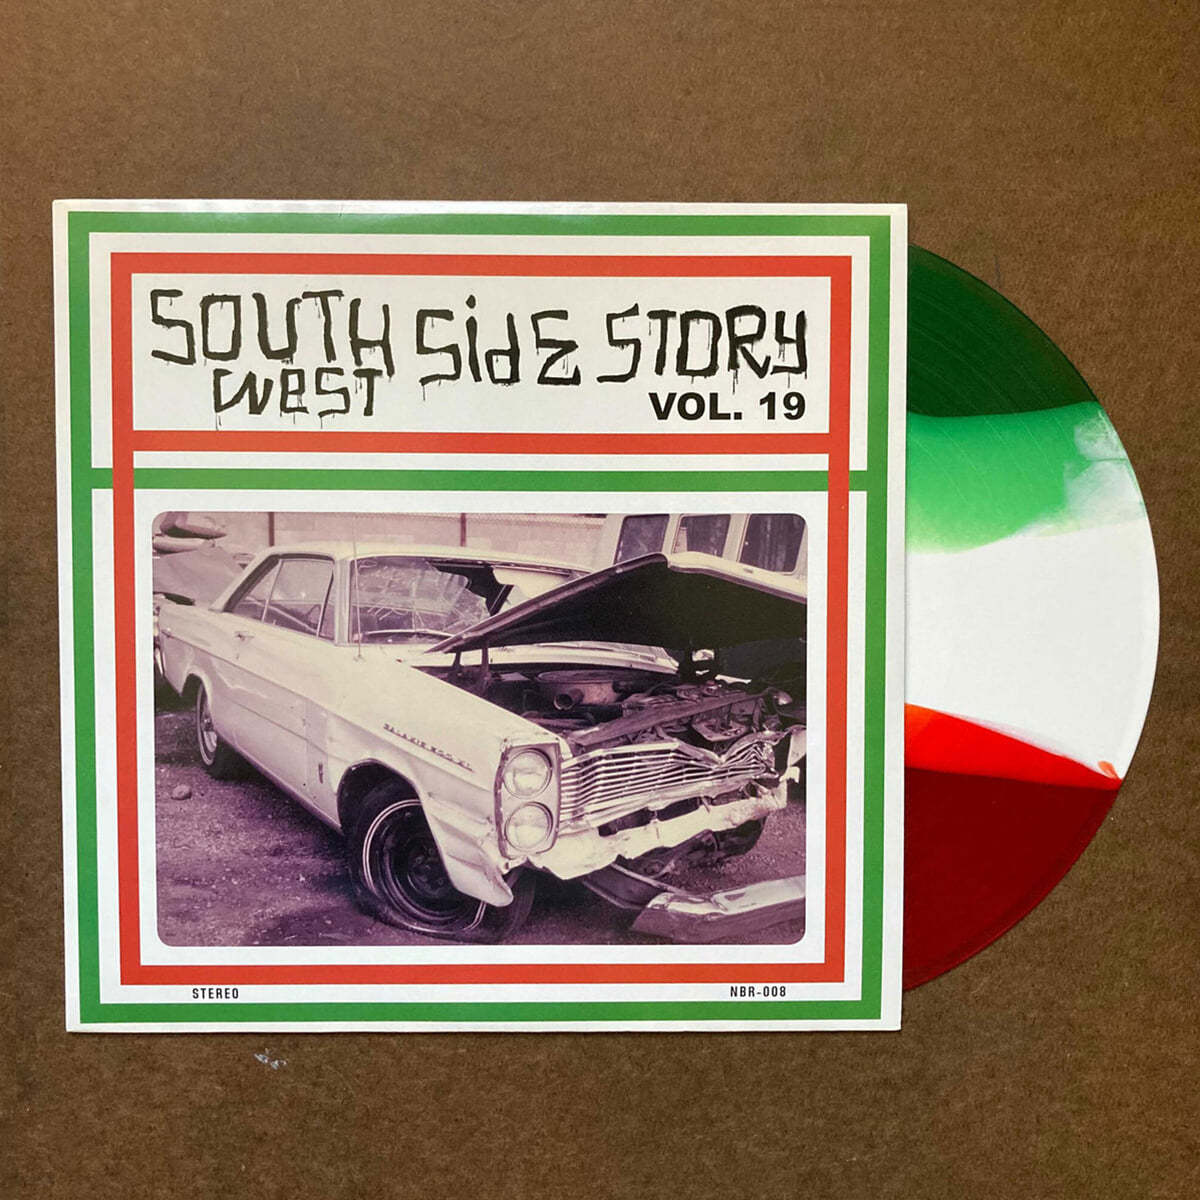 Numero Group 레이블 컴필레이션 (Southwest Side Story Vol. 19) [트리플 스트라이프 컬러 LP]